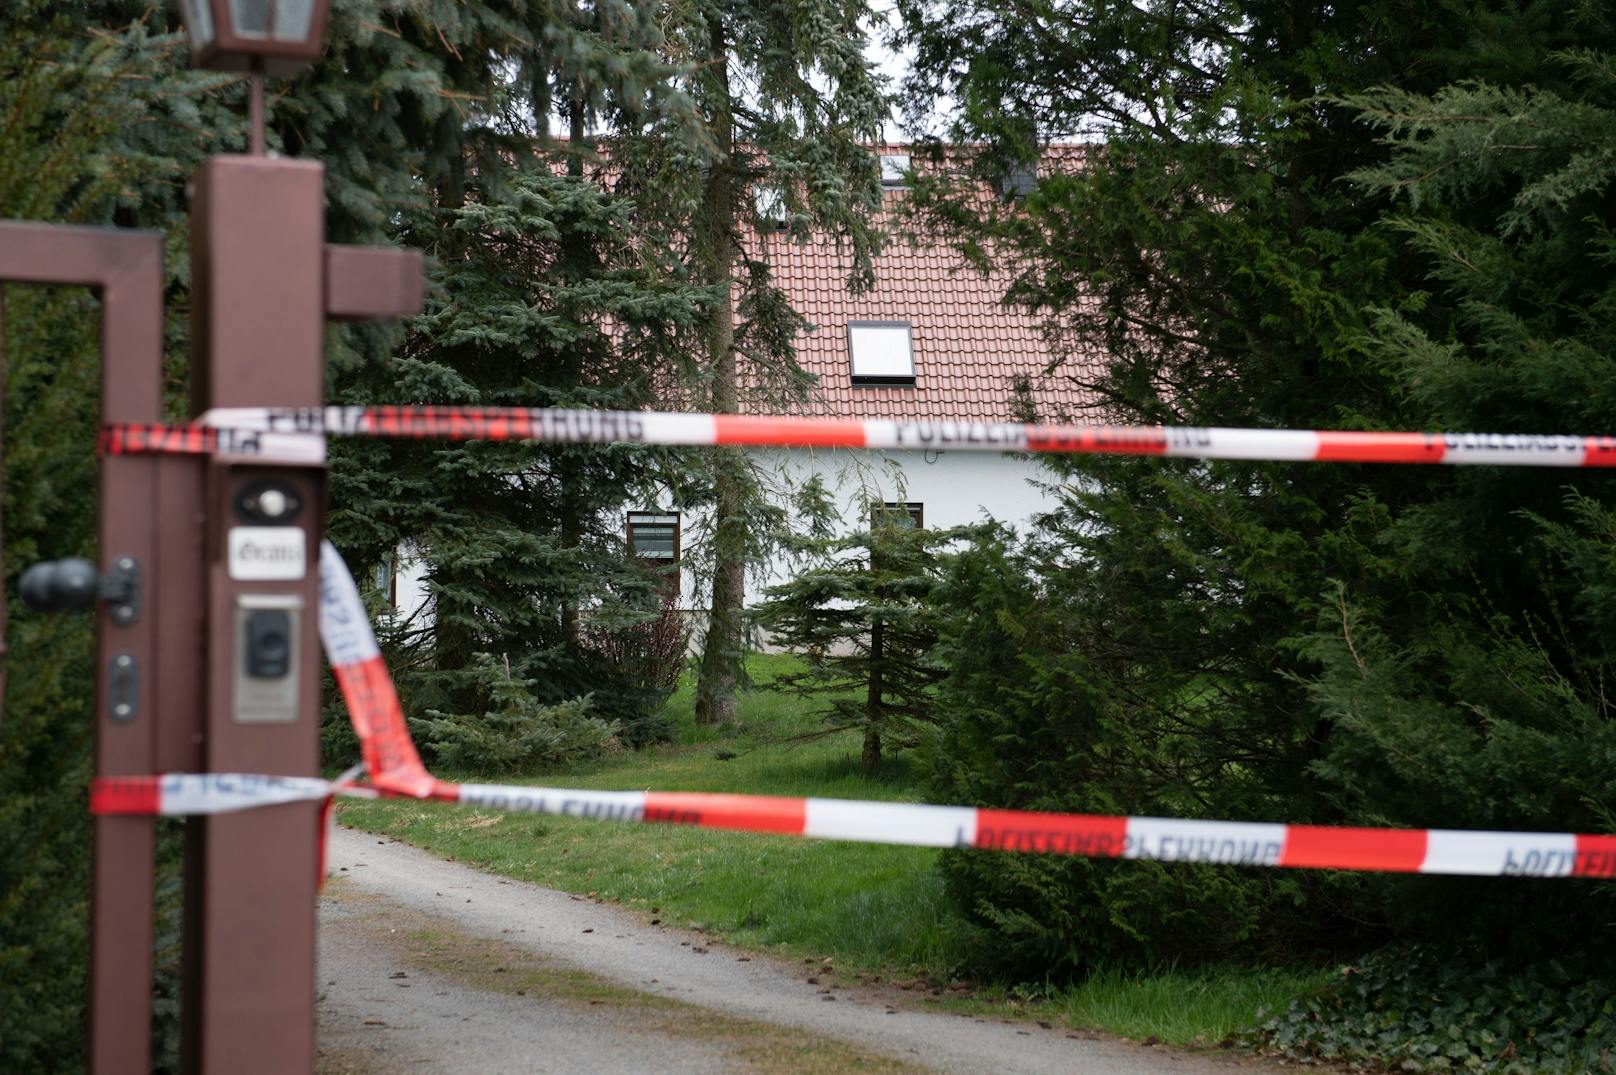 Grauen im Einfamilienhaus – vier Menschen tot gefunden